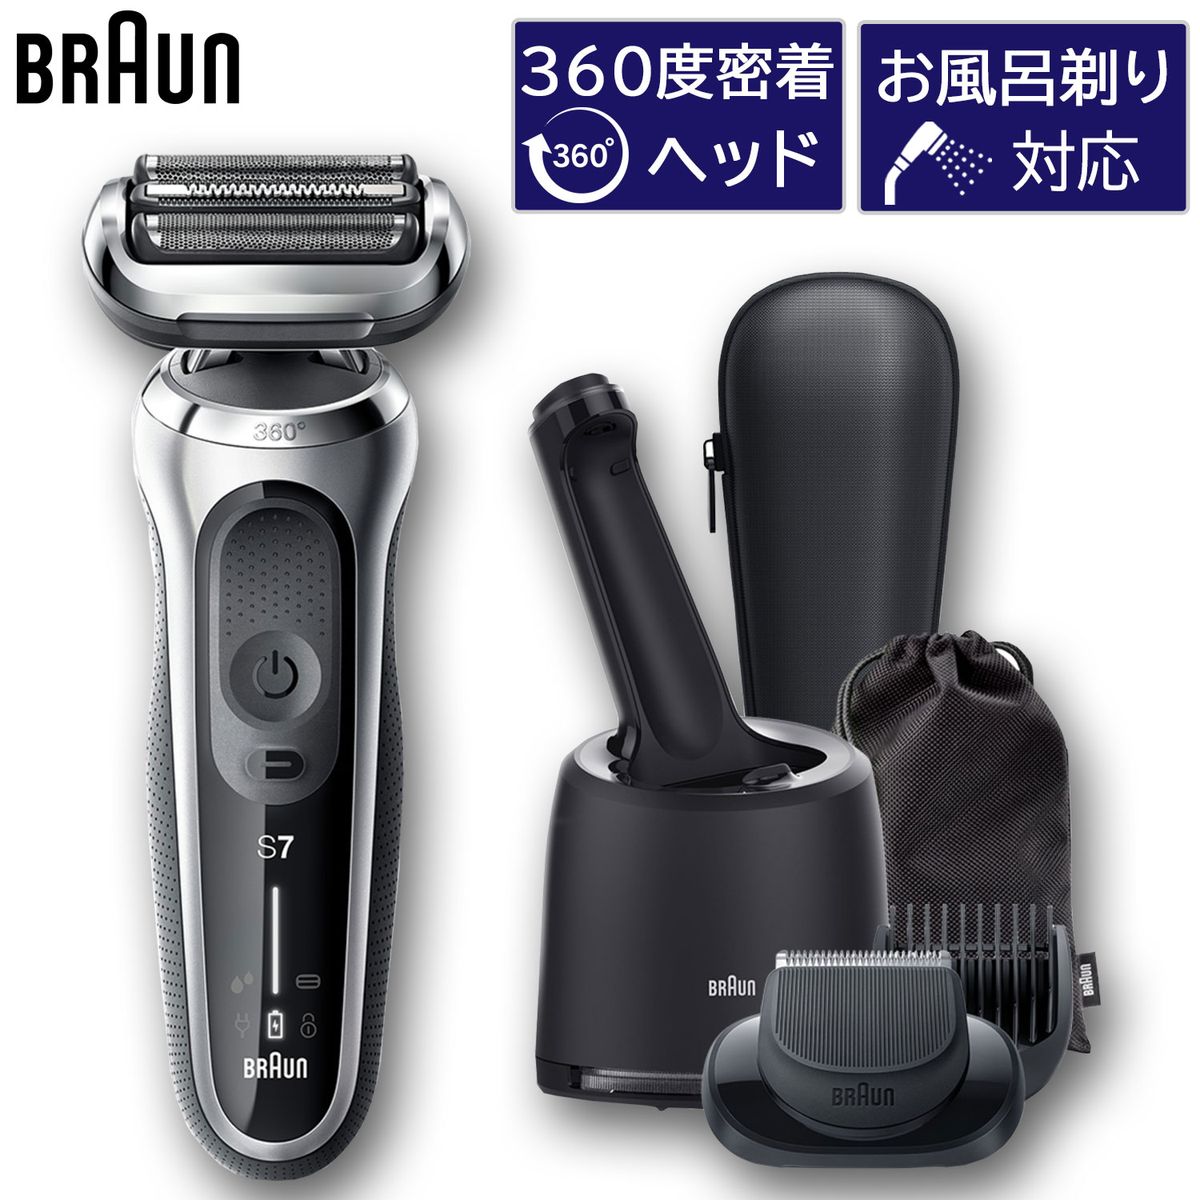 BRAUN シリーズ7 メンズシェーバー 髭剃り シルバー 洗浄機付き 人工知能搭載